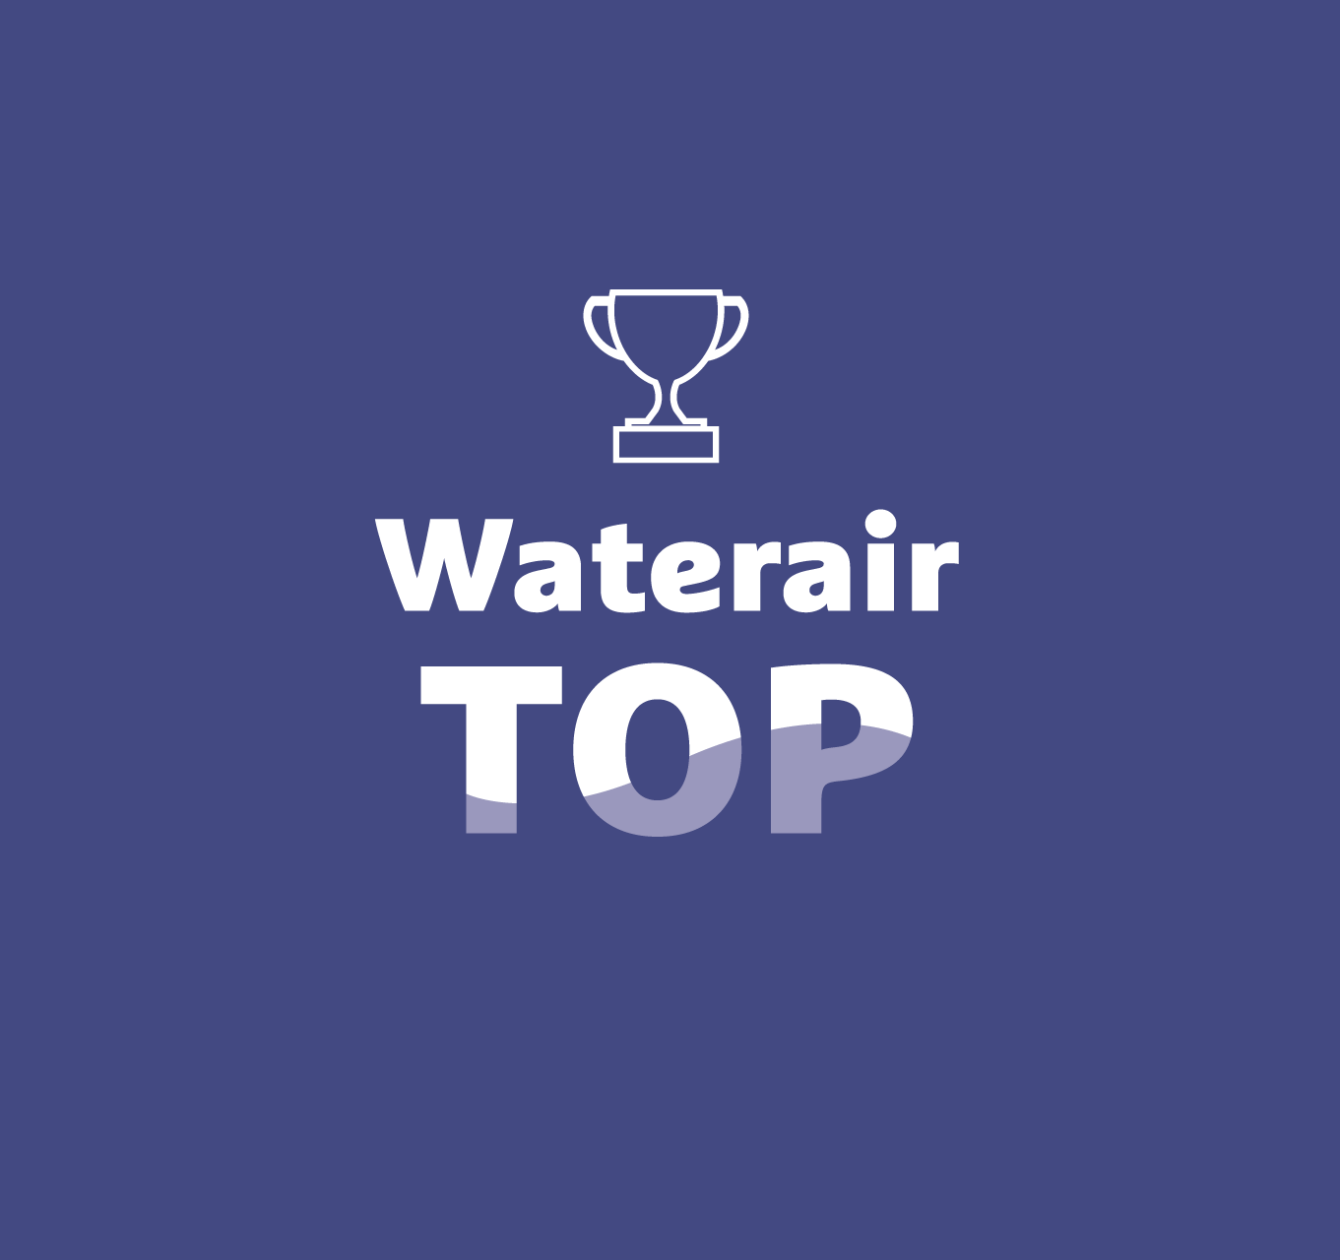 Waterair Top: het beste van Waterair-technologie tot uw beschikking